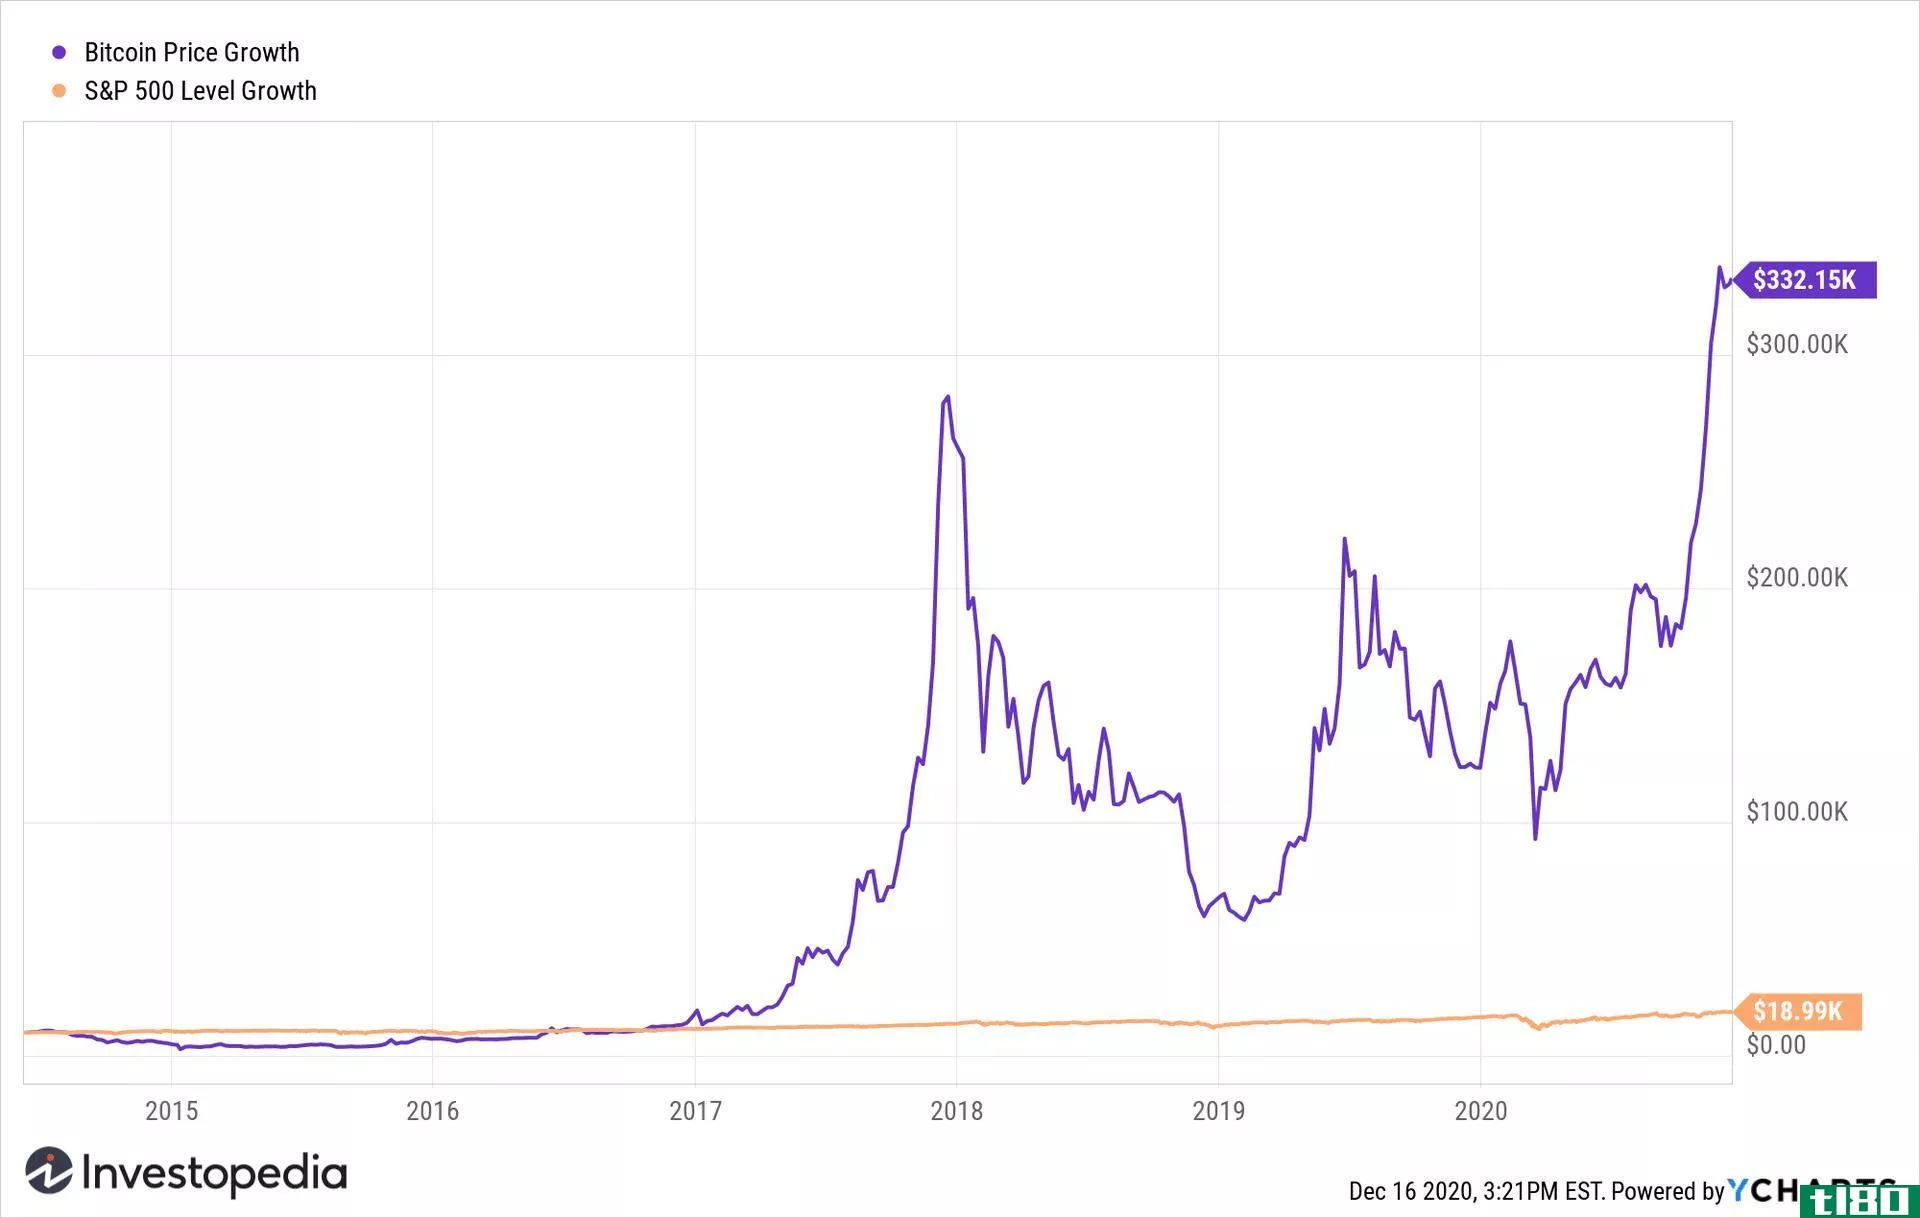 Bitcoin vs S&P 500 price chart